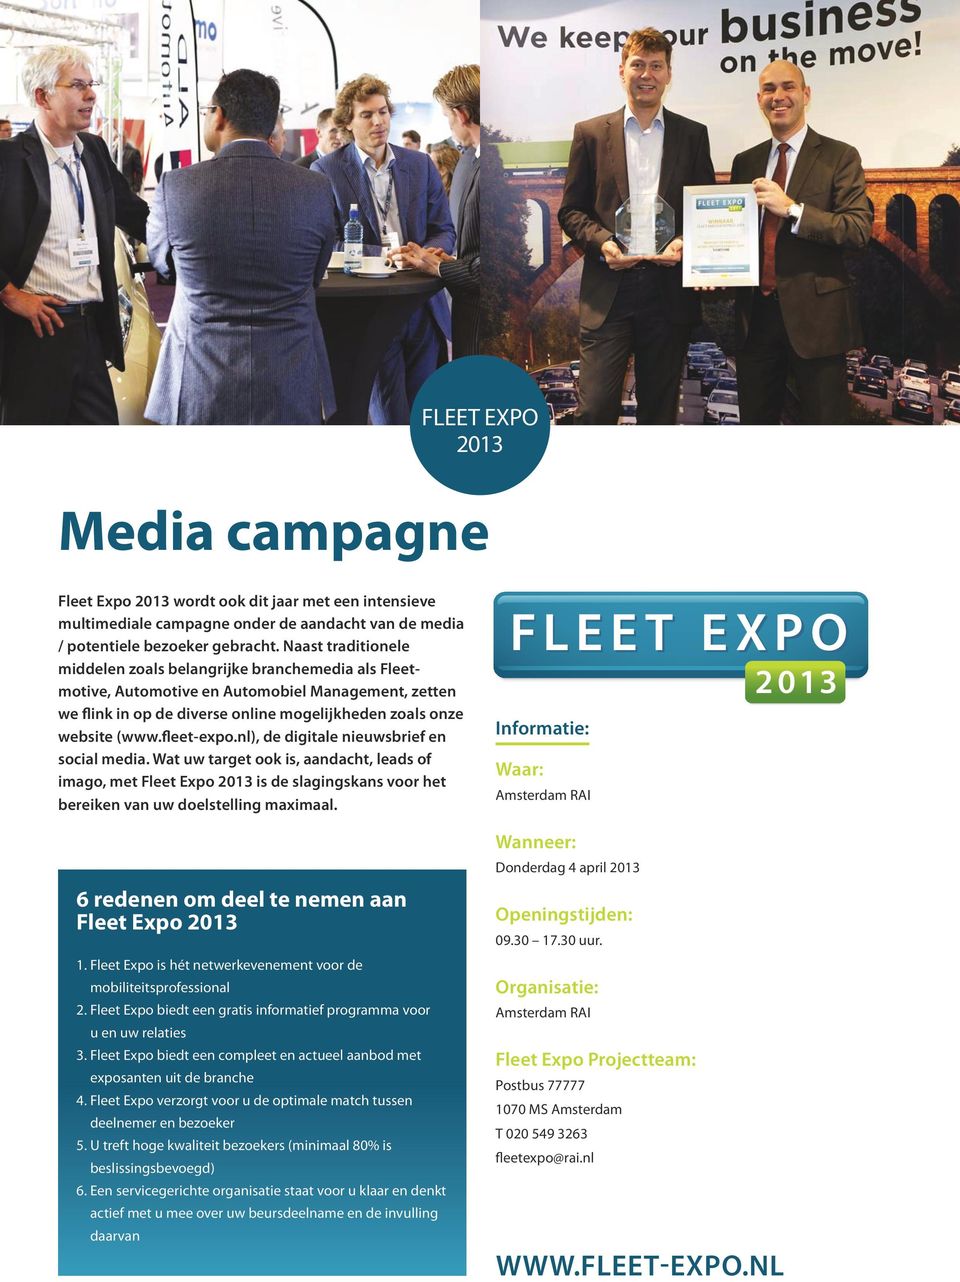 fleet-expo.nl), de digitale nieuwsbrief en social media. Wat uw target ook is, aandacht, leads of imago, met Fleet Expo is de slagingskans voor het bereiken van uw doelstelling maximaal.